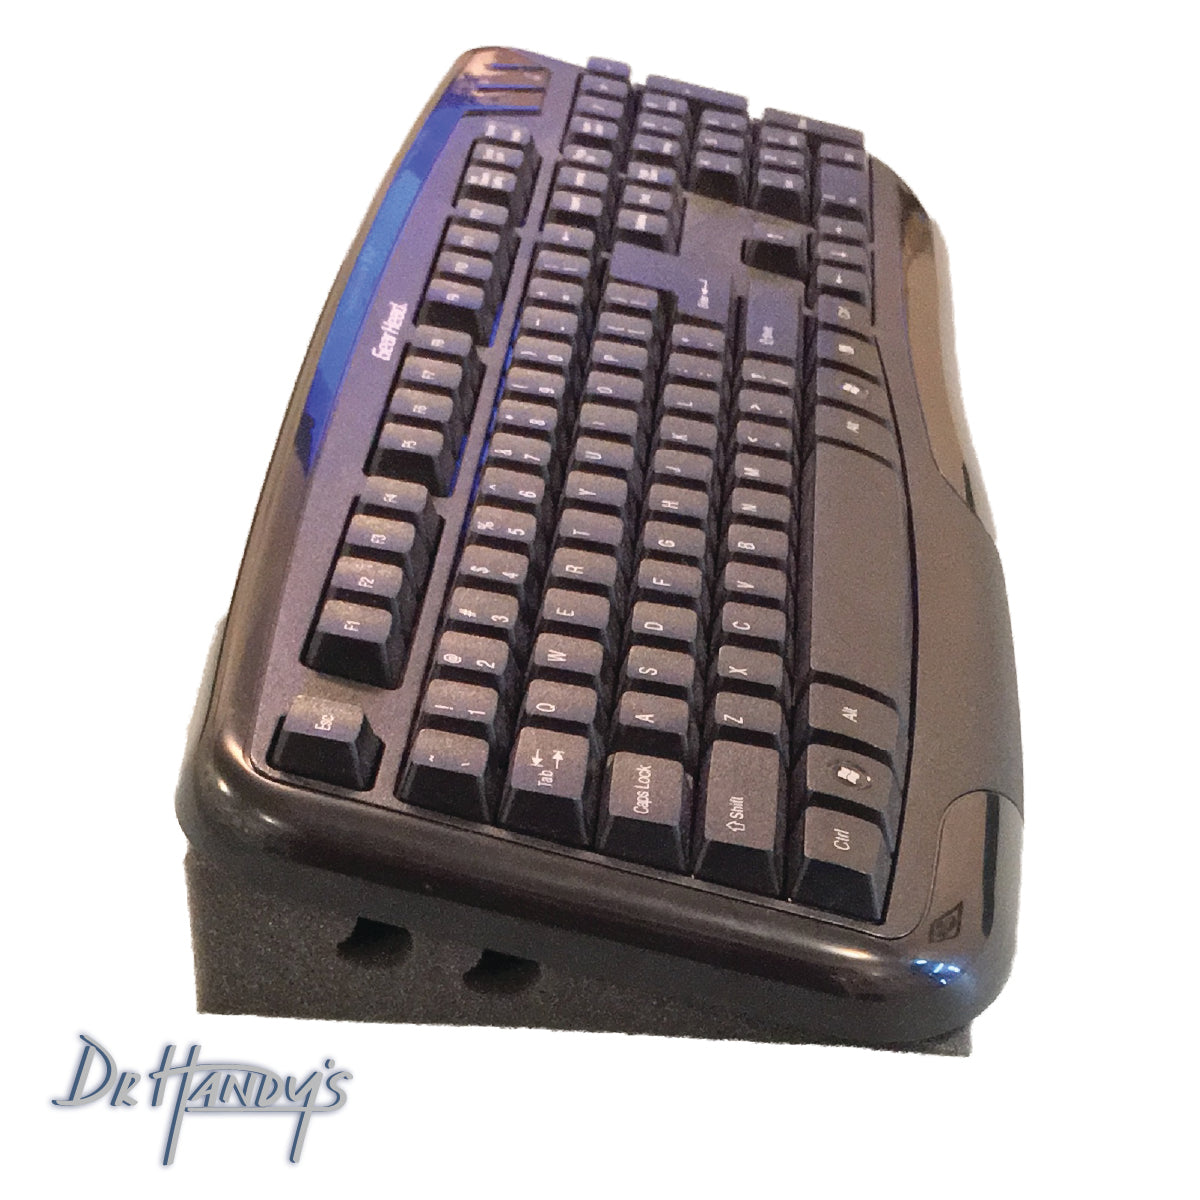 Keyboard Wedge